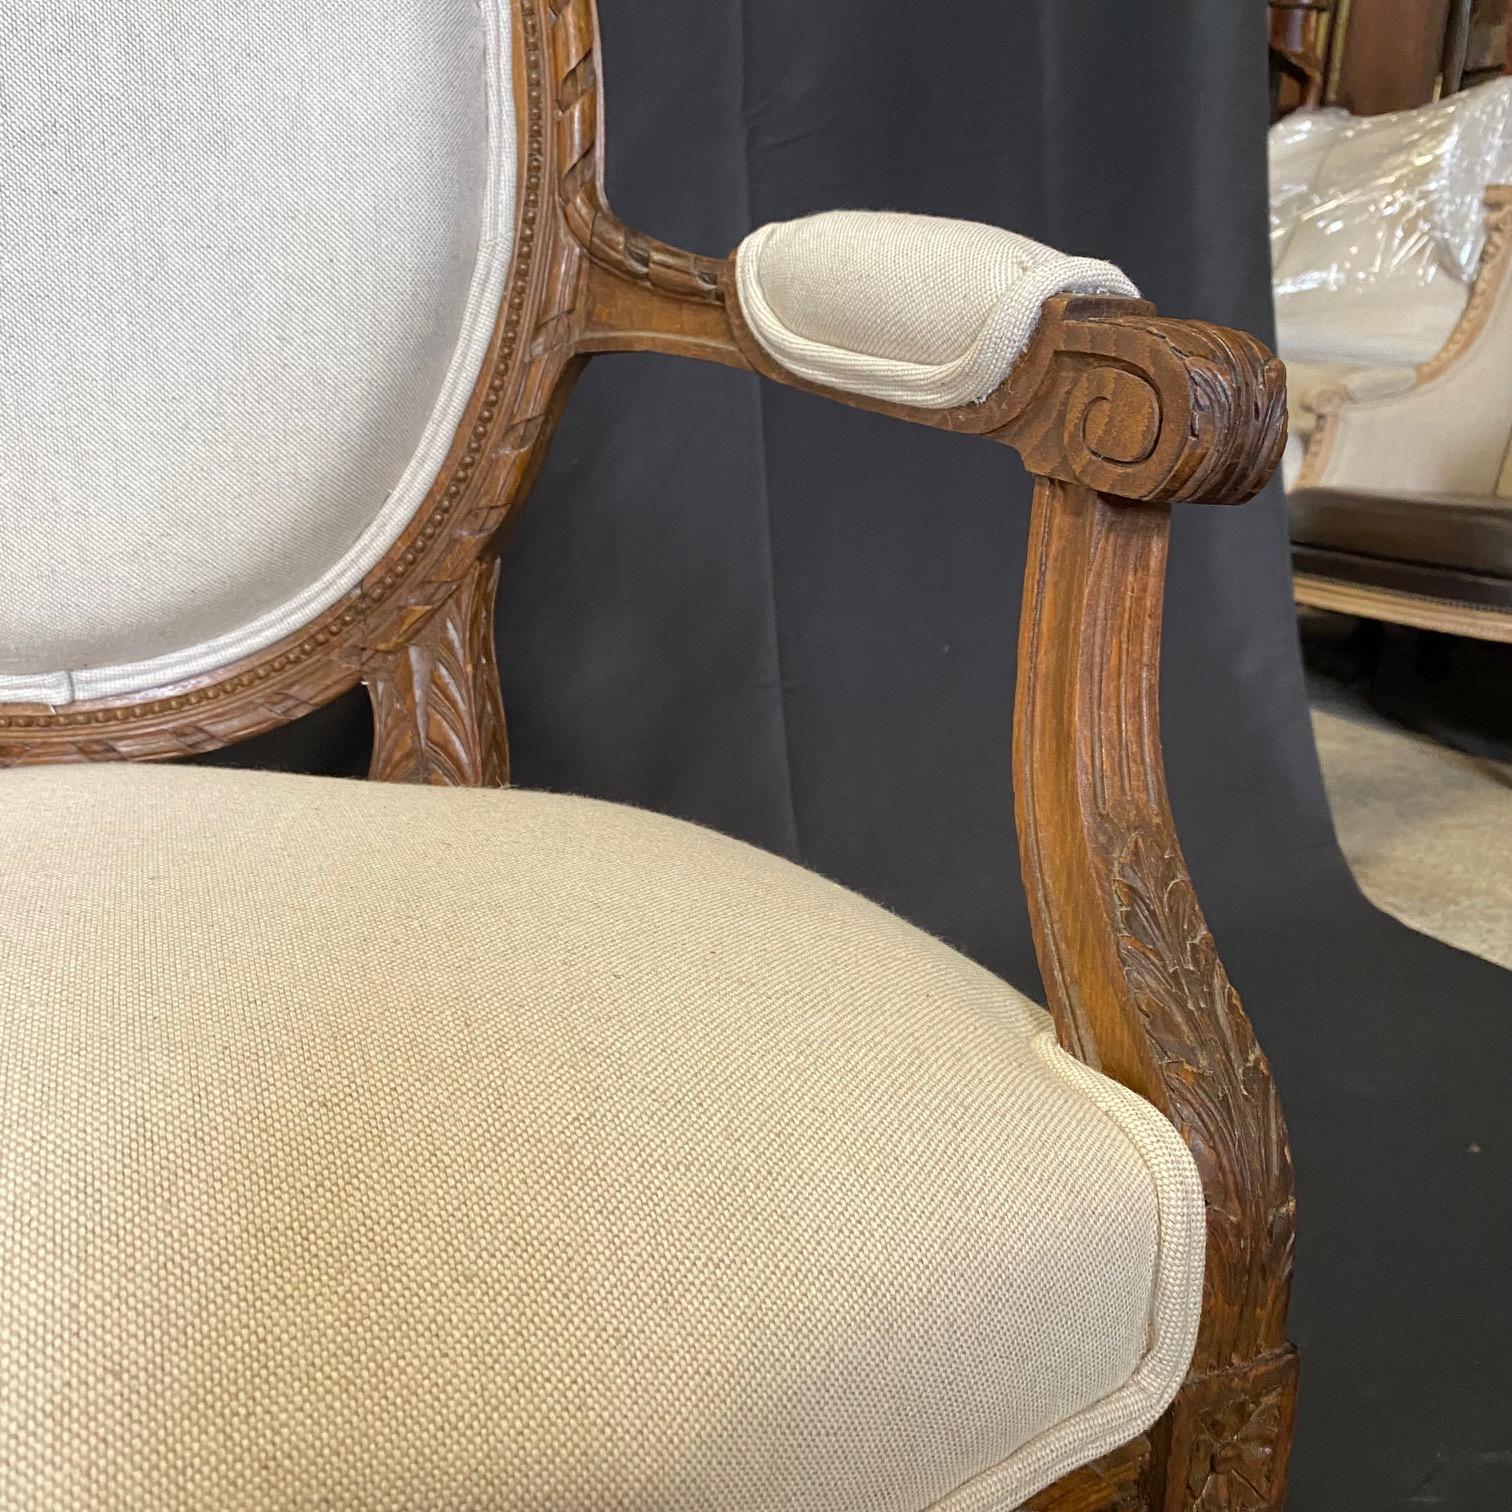 Zwei antike französische Louis-XVI-Sessel aus dem 19. Jahrhundert mit neuen neutralen, hochwertigen britischen Polstern.  Schön geschnitzt in Nussbaum mit einer fantastischen Patina. Jeder Stuhl steht auf feinen, einzigartig geformten, runden,